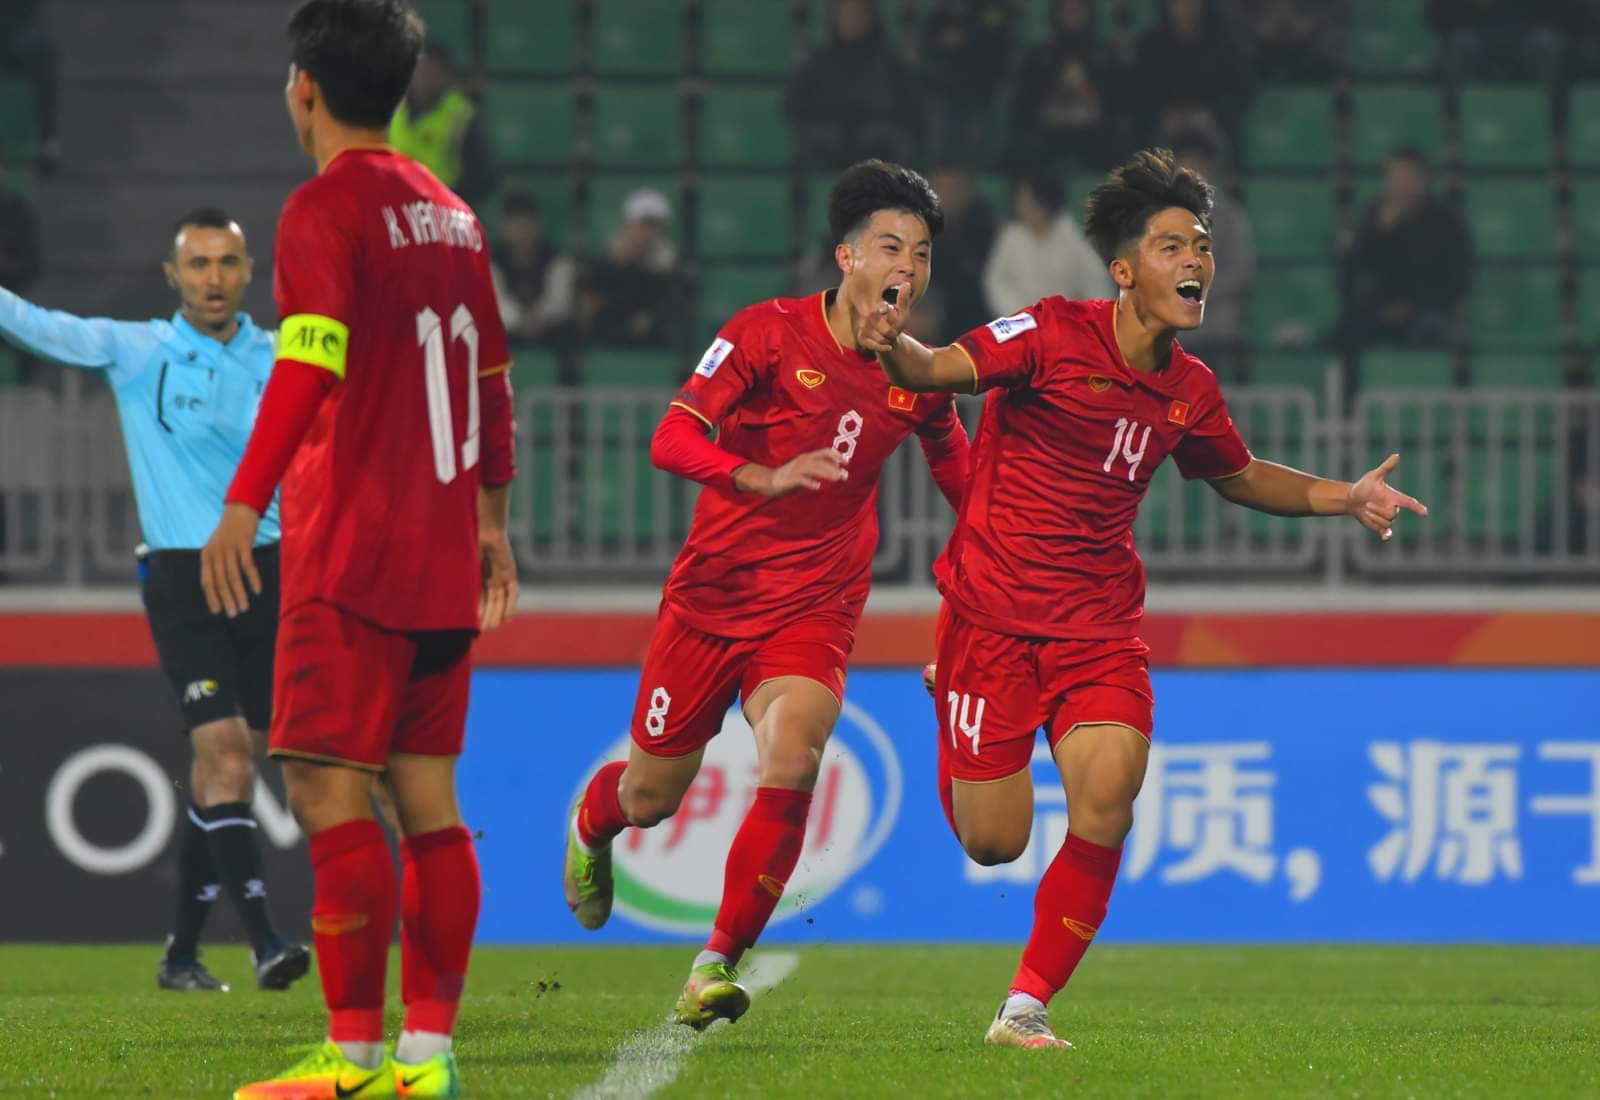 ĐT U20 VN thi đấu vô cùng biến hóa dưới sự dẫn dắt của HLV Hoàng Anh Tuấn